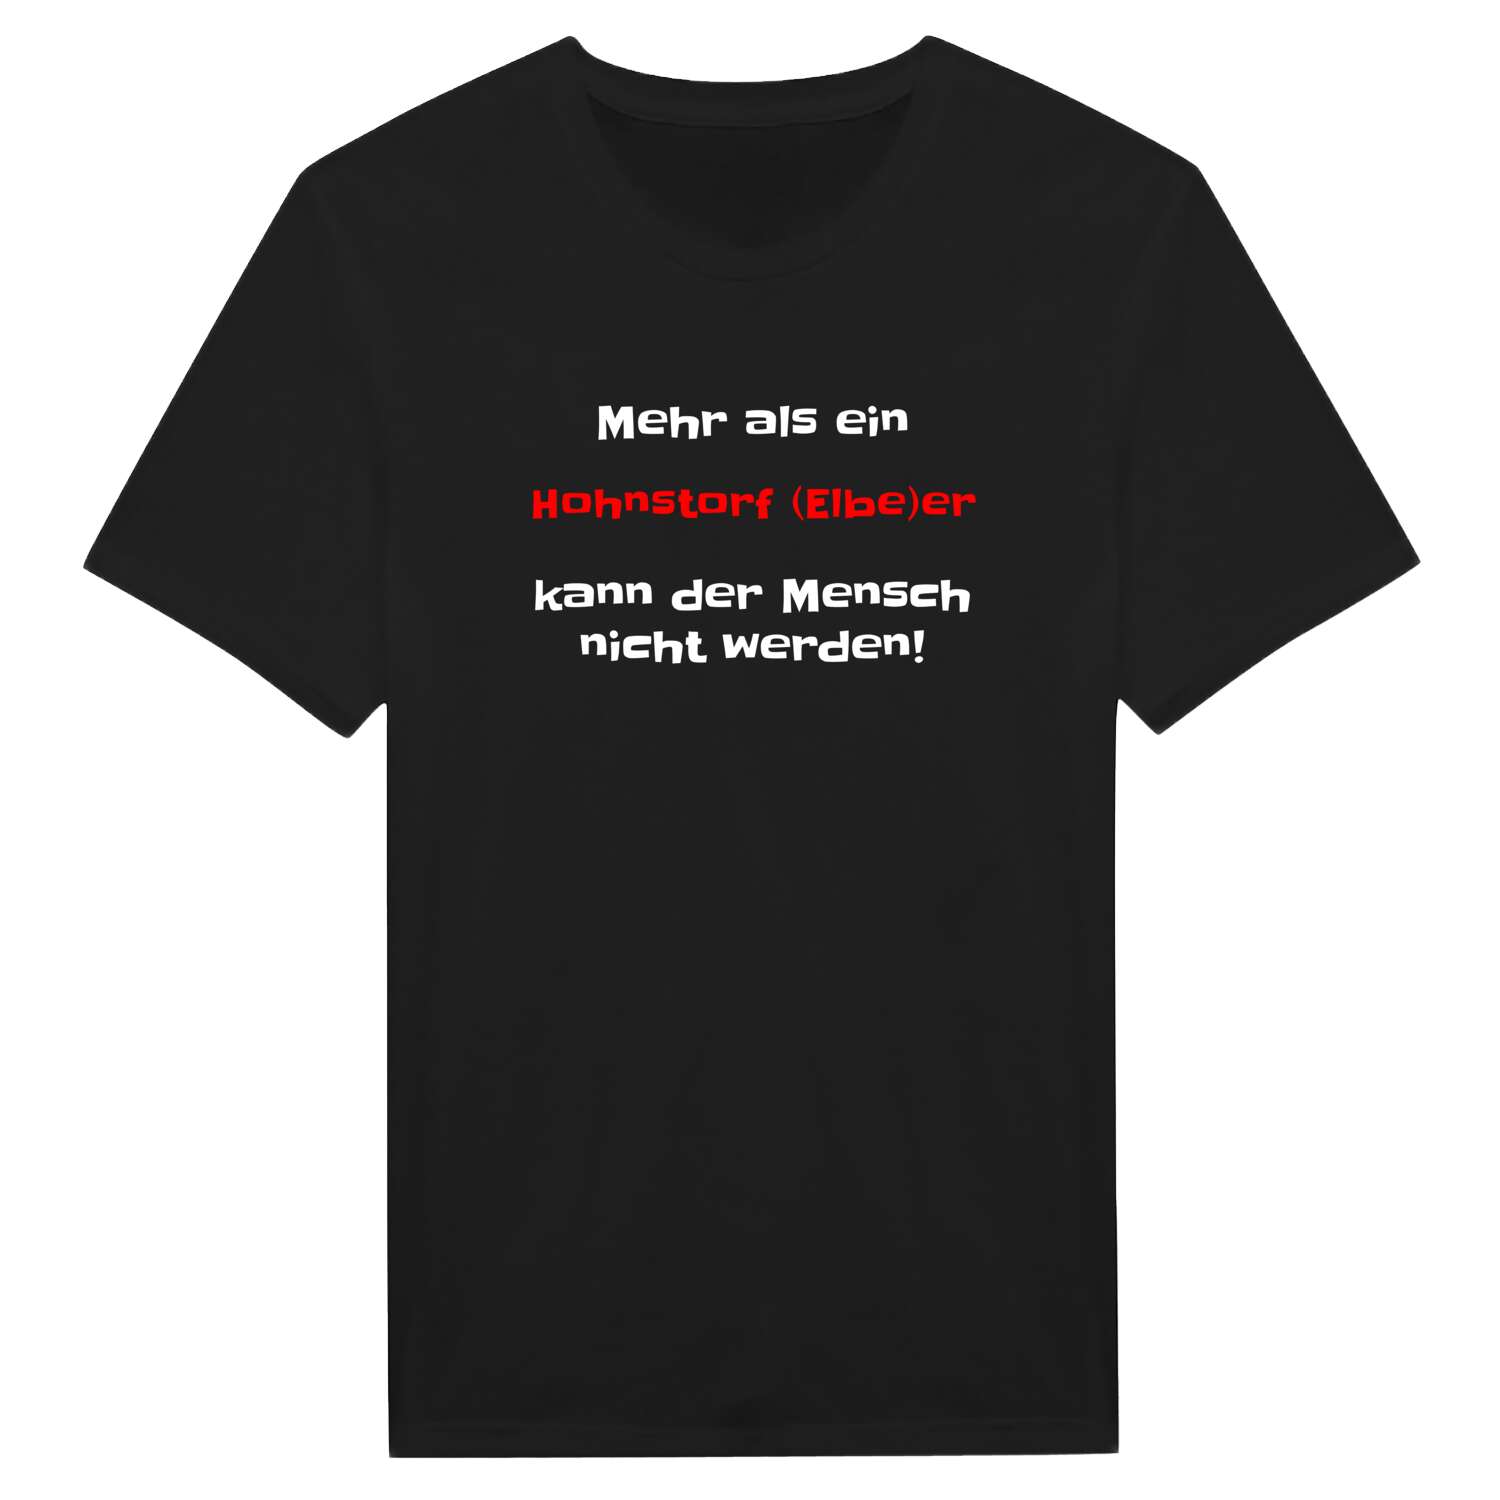 Hohnstorf (Elbe) T-Shirt »Mehr als ein«